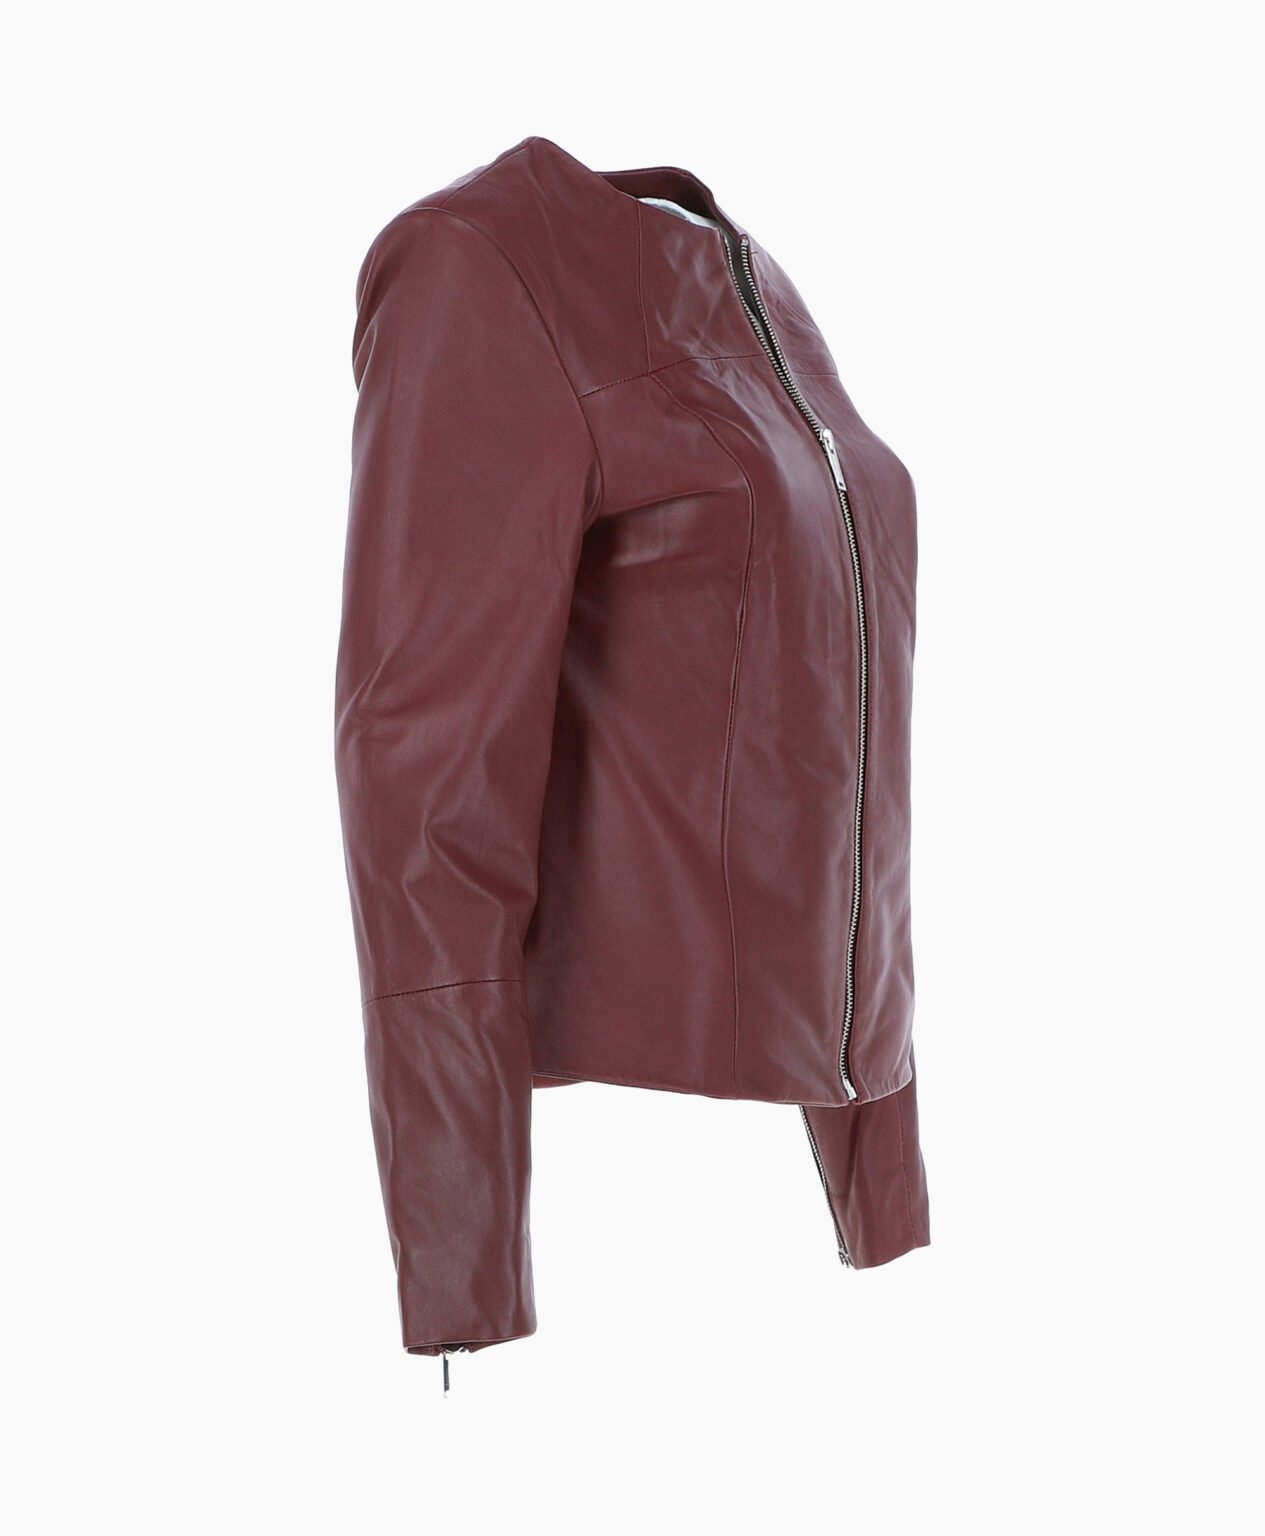 vogue-jacket-leather-fashion-jacket-oxblood-elizabeth-image203